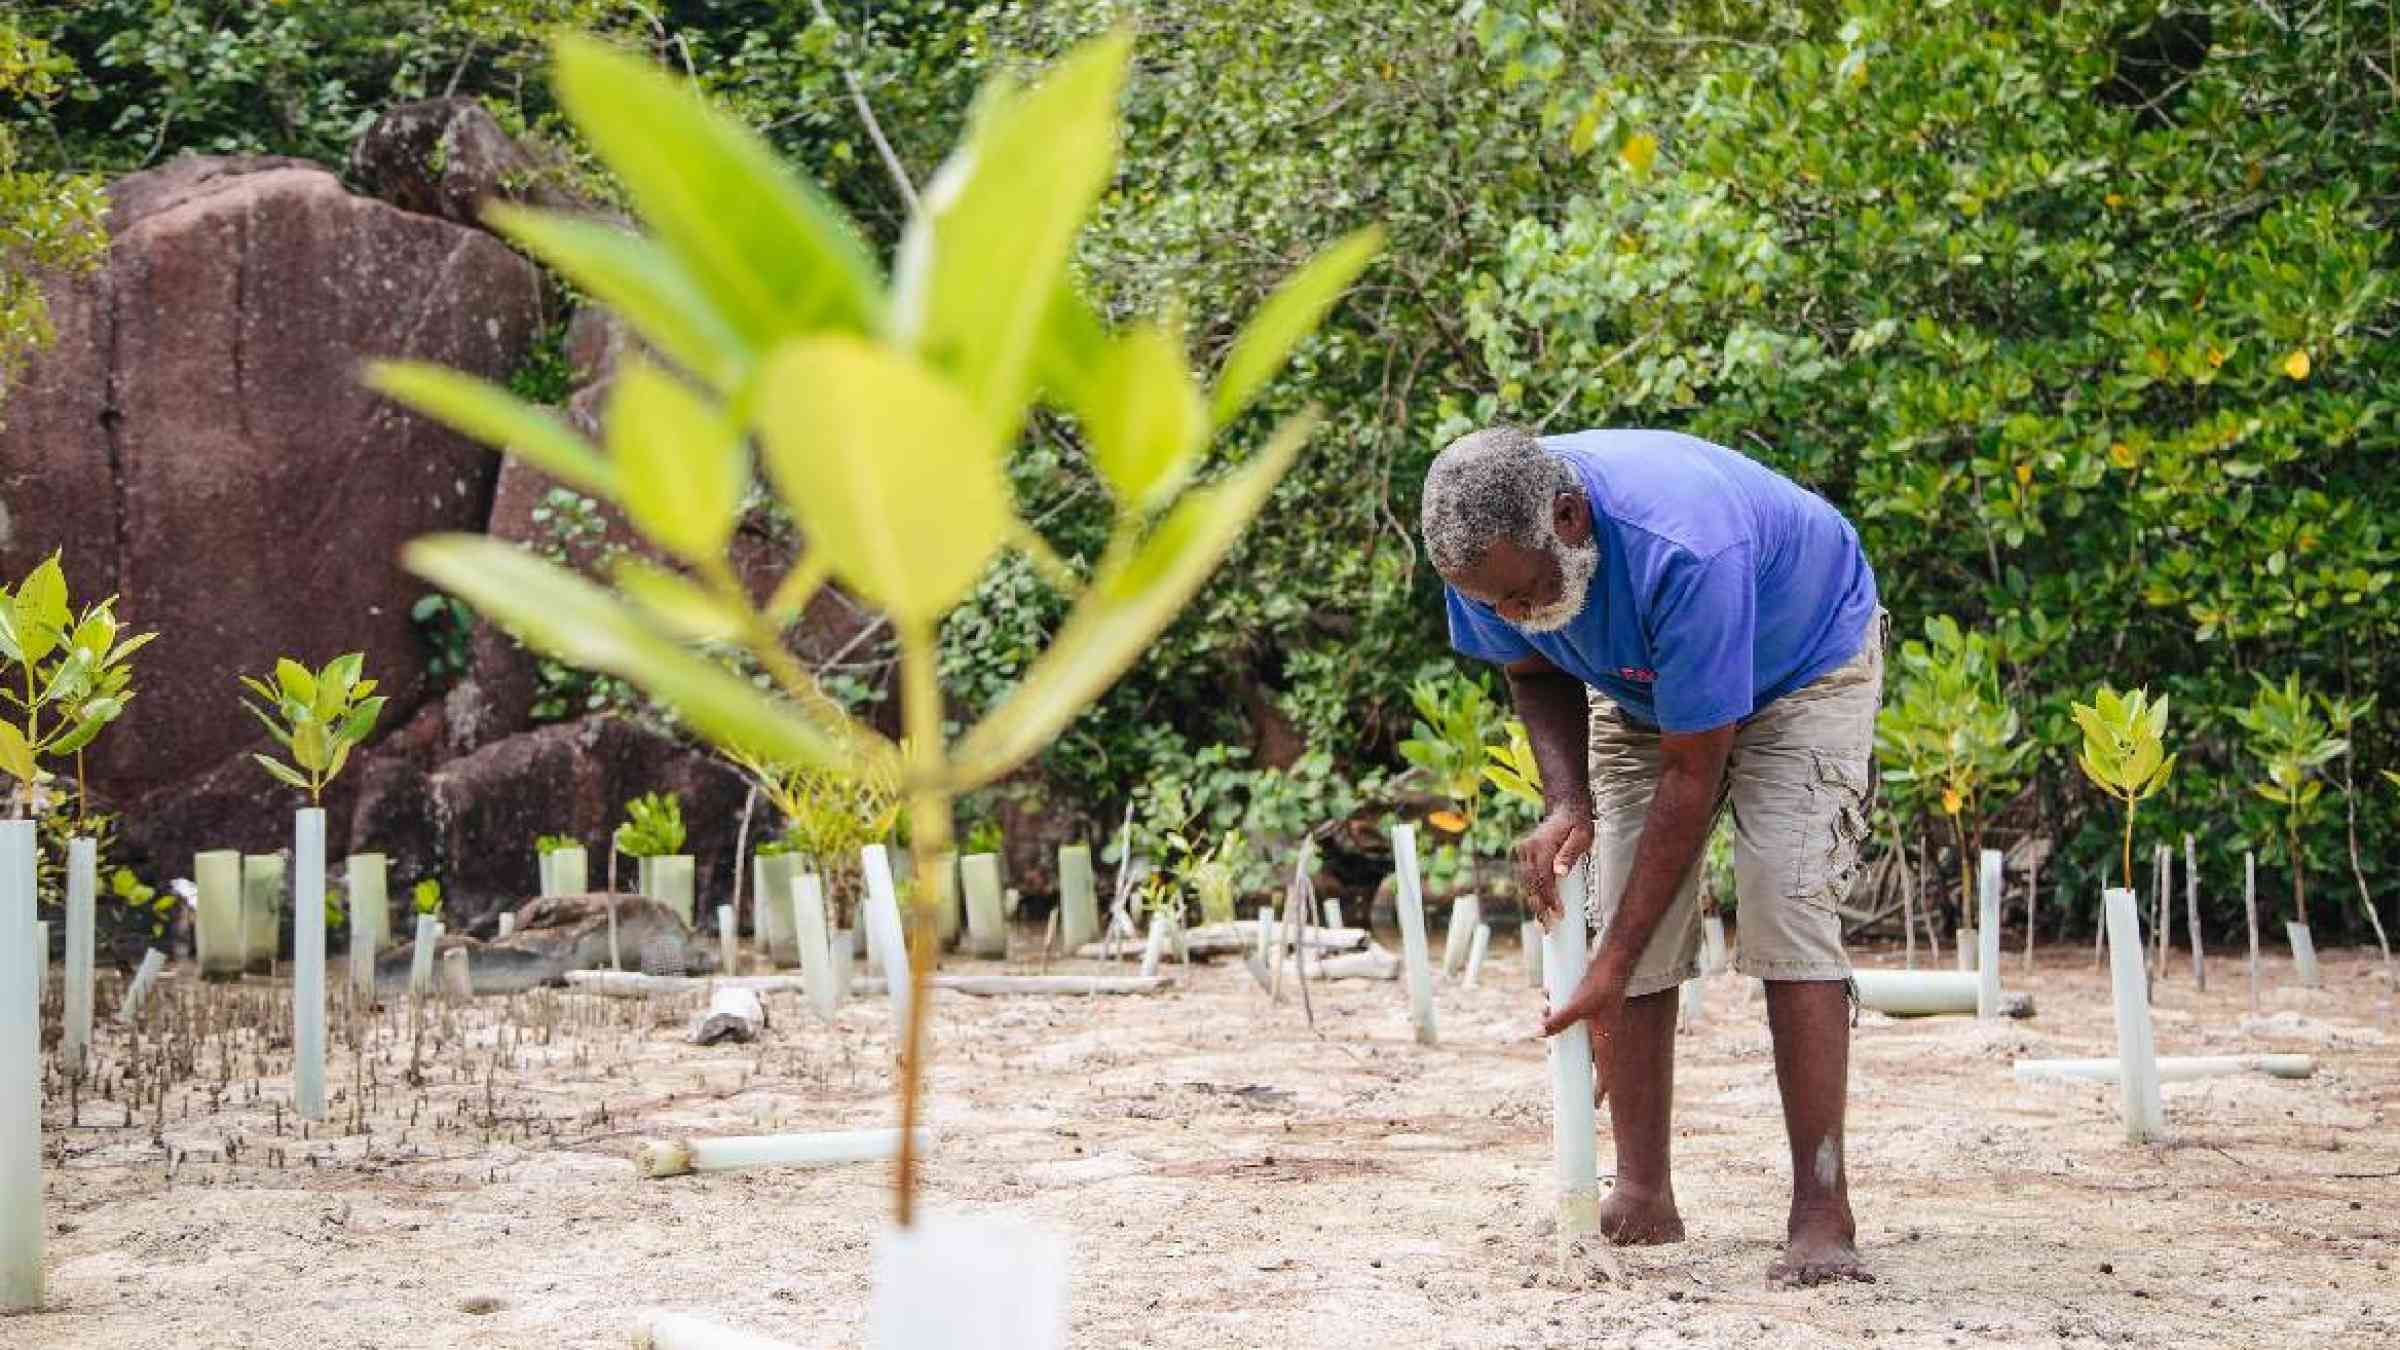 Restoring mangroves in the Seychelles